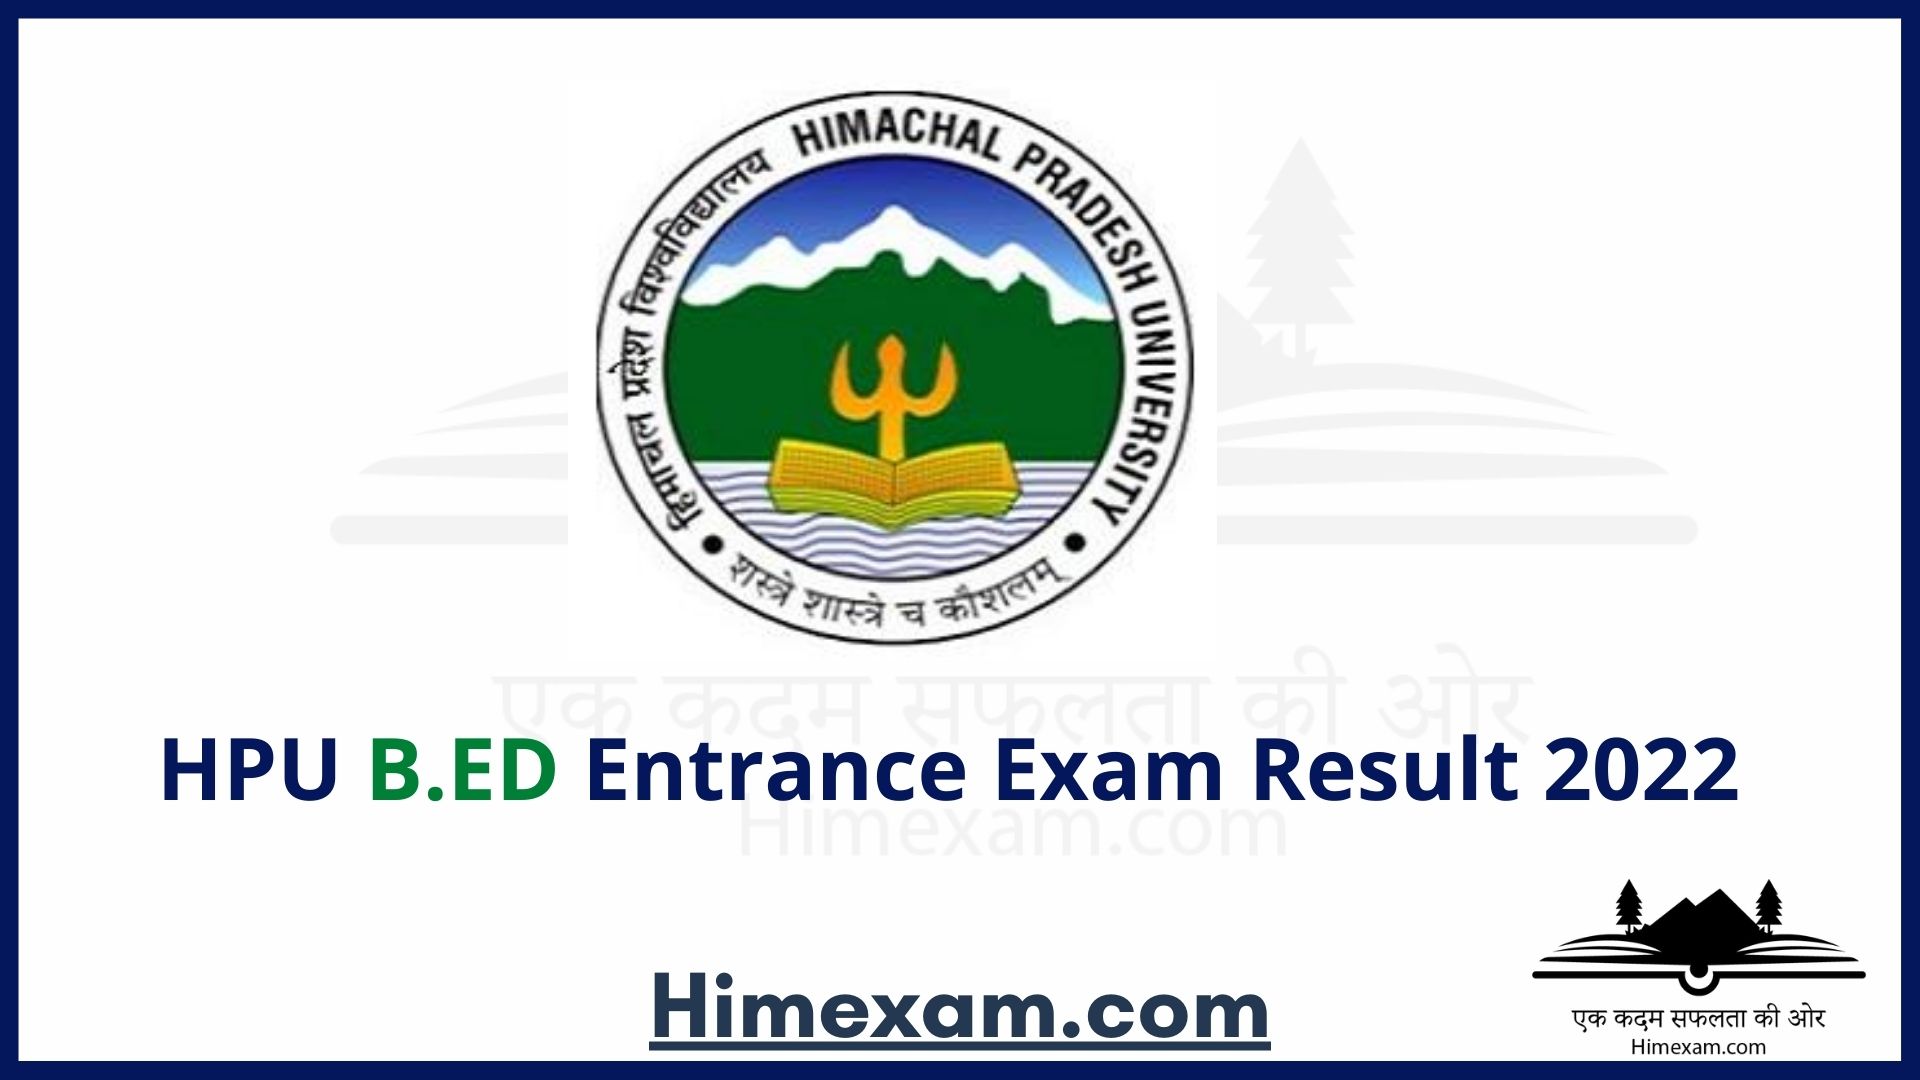 HPU B.ED Entrance Exam Result 2022